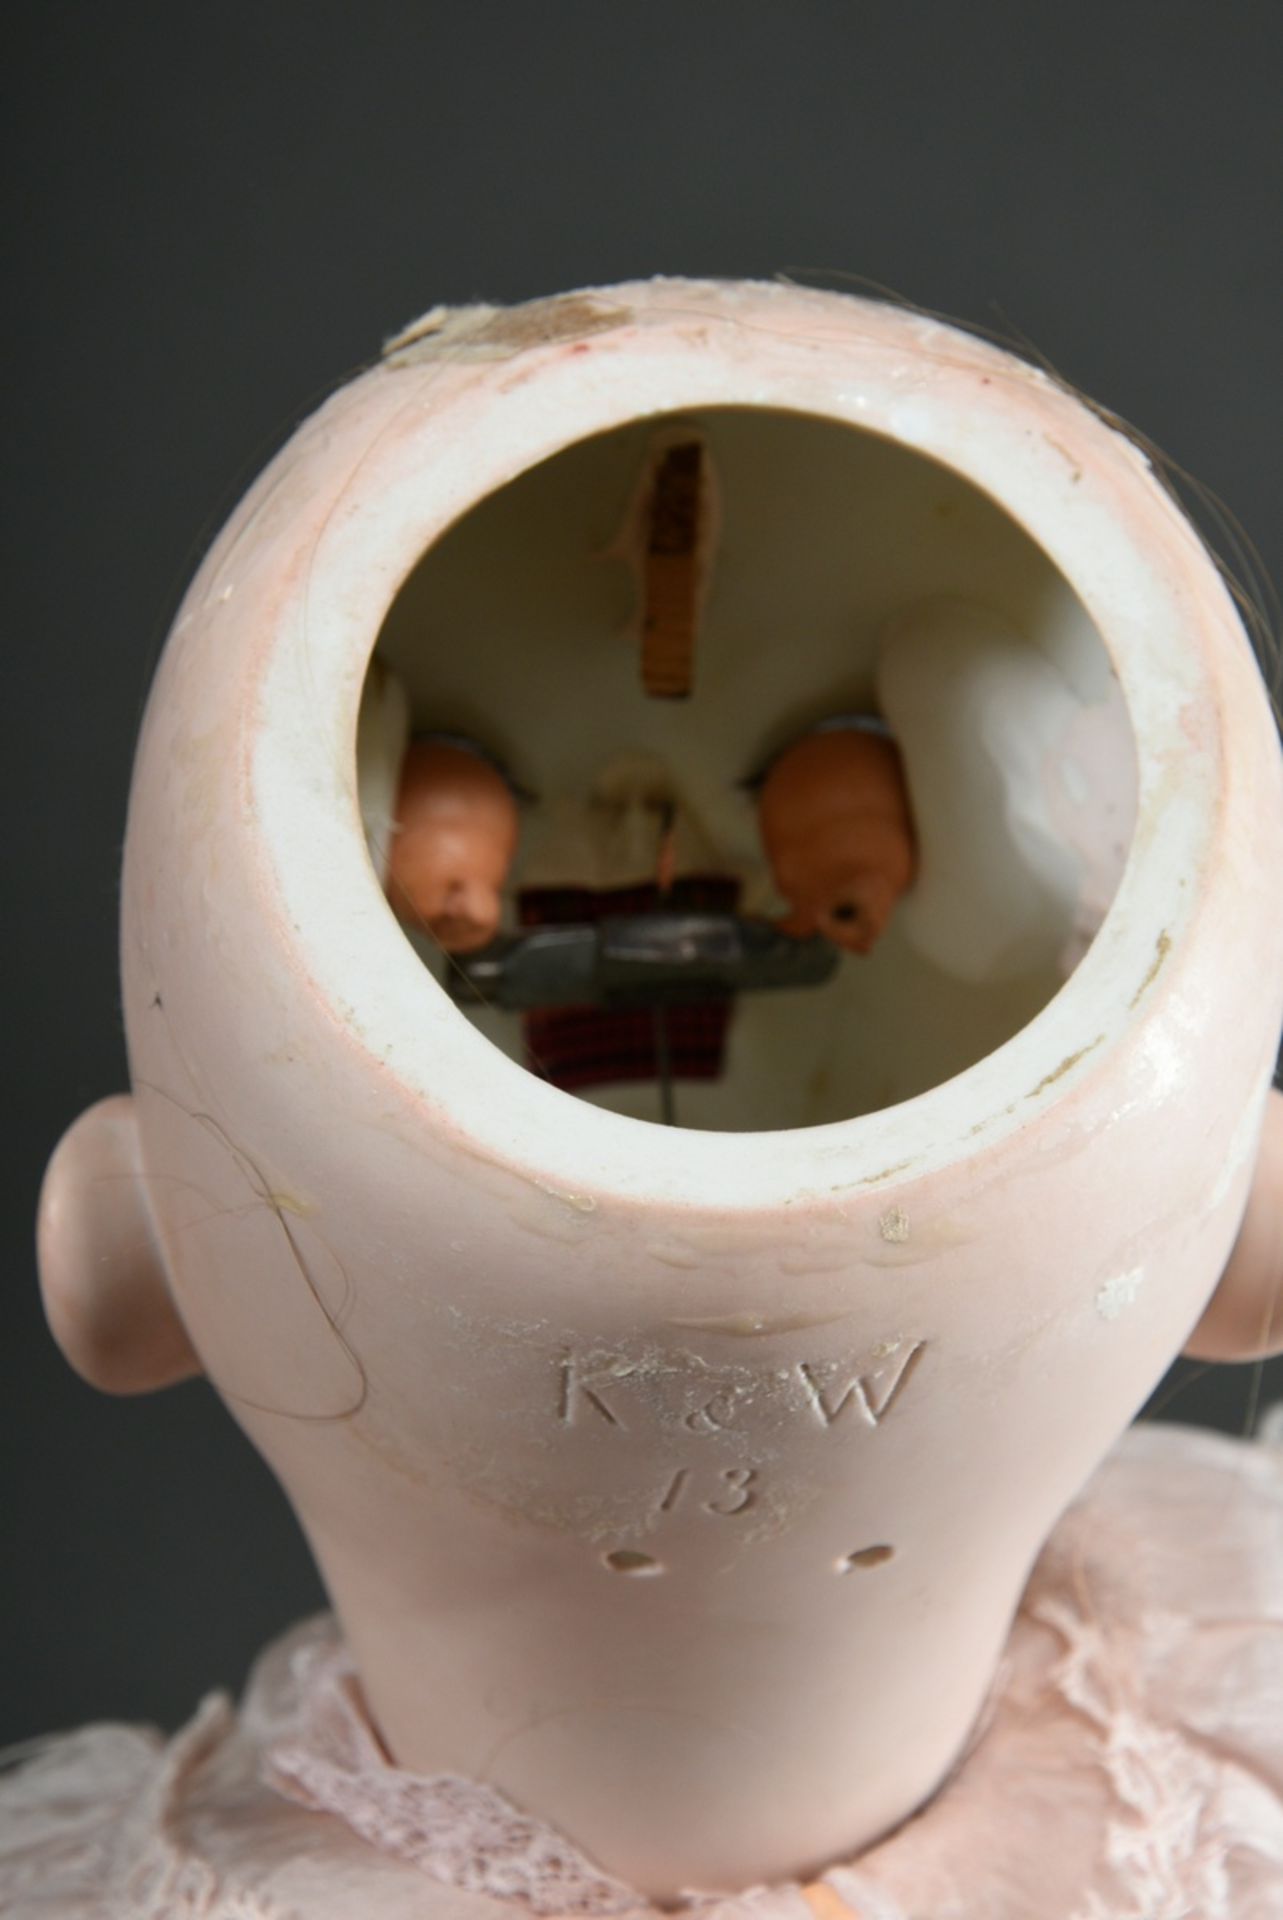 König & Wernicke Puppe mit Biskuitporzellan Kurbelkopf, blaue Schlafaugen, offener Mund mit zwei Zä - Bild 6 aus 6